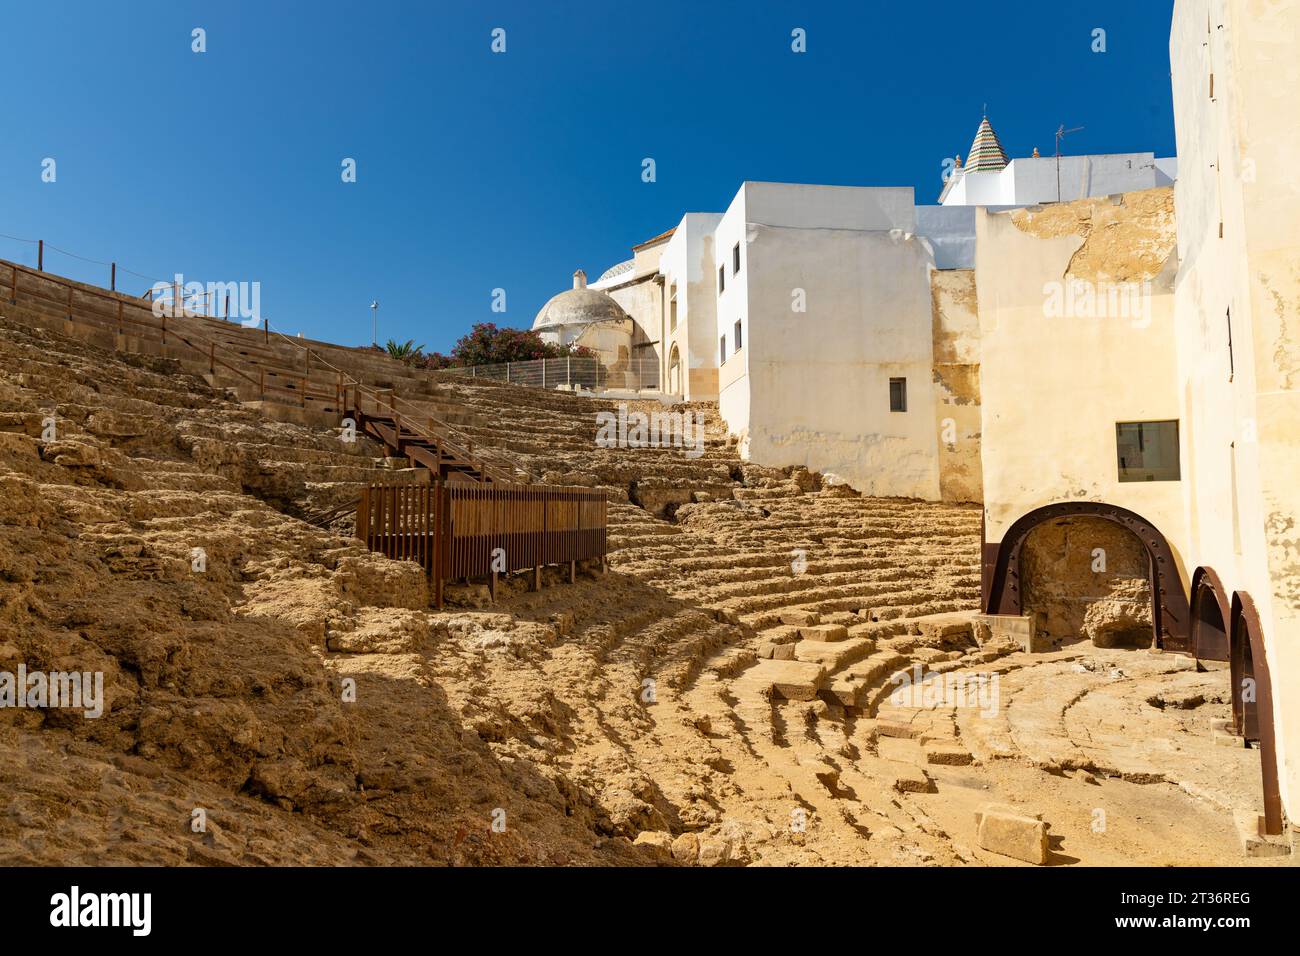 old roman theatre ruin in Cadiz Stock Photo